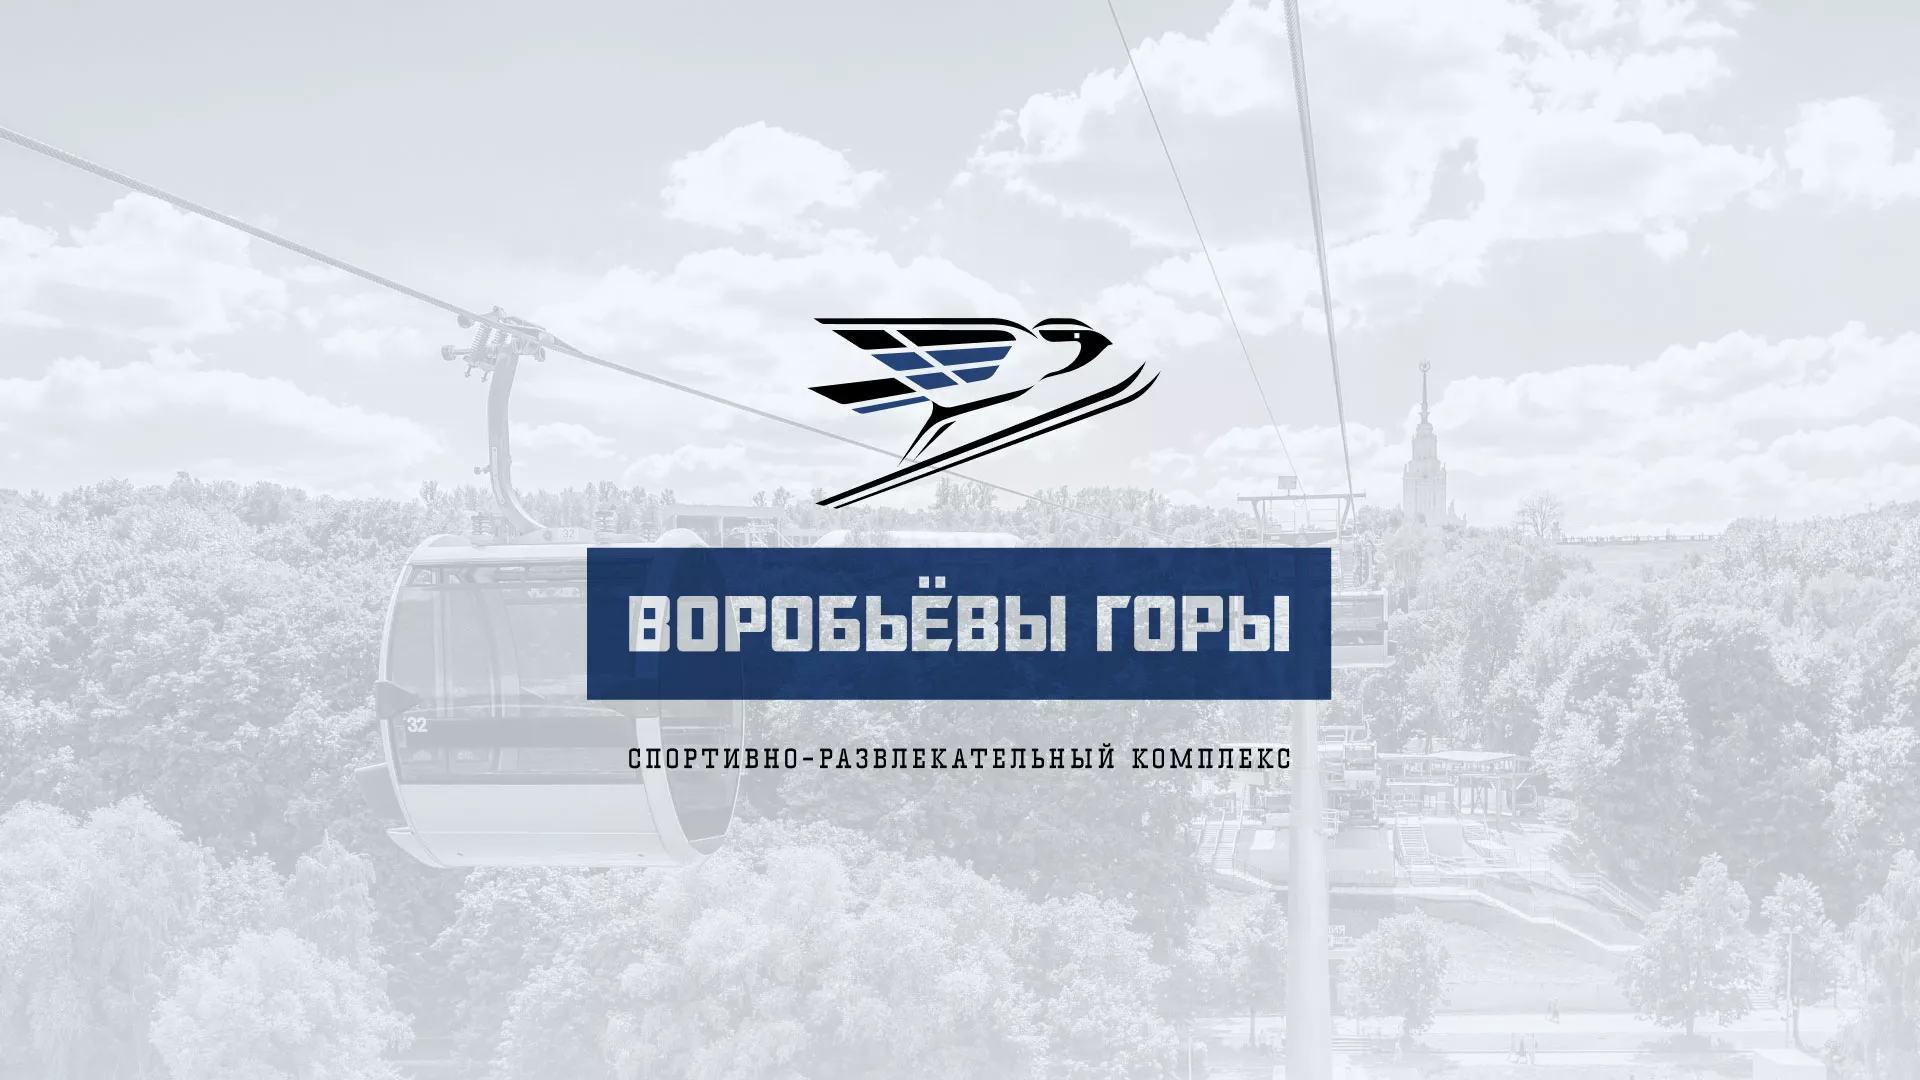 Разработка сайта в Моршанске для спортивно-развлекательного комплекса «Воробьёвы горы»